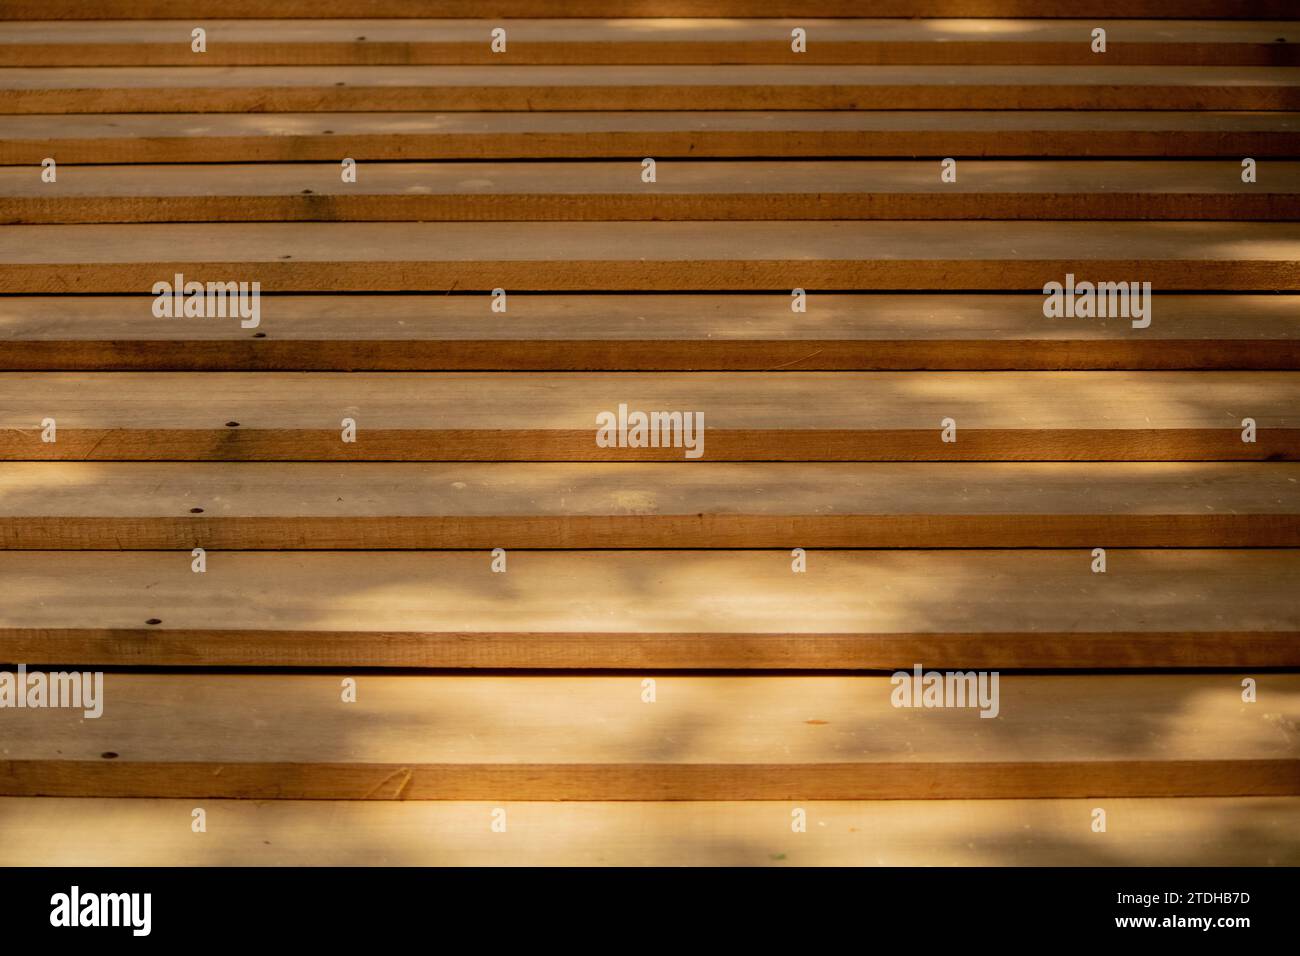 Sinfonia astratta di tavole di legno, aggraziatamente disposte in armonia sfalsata, dipinte dalle ombre delicate gettate dal fogliame sospeso, una poesia visiva. Foto Stock